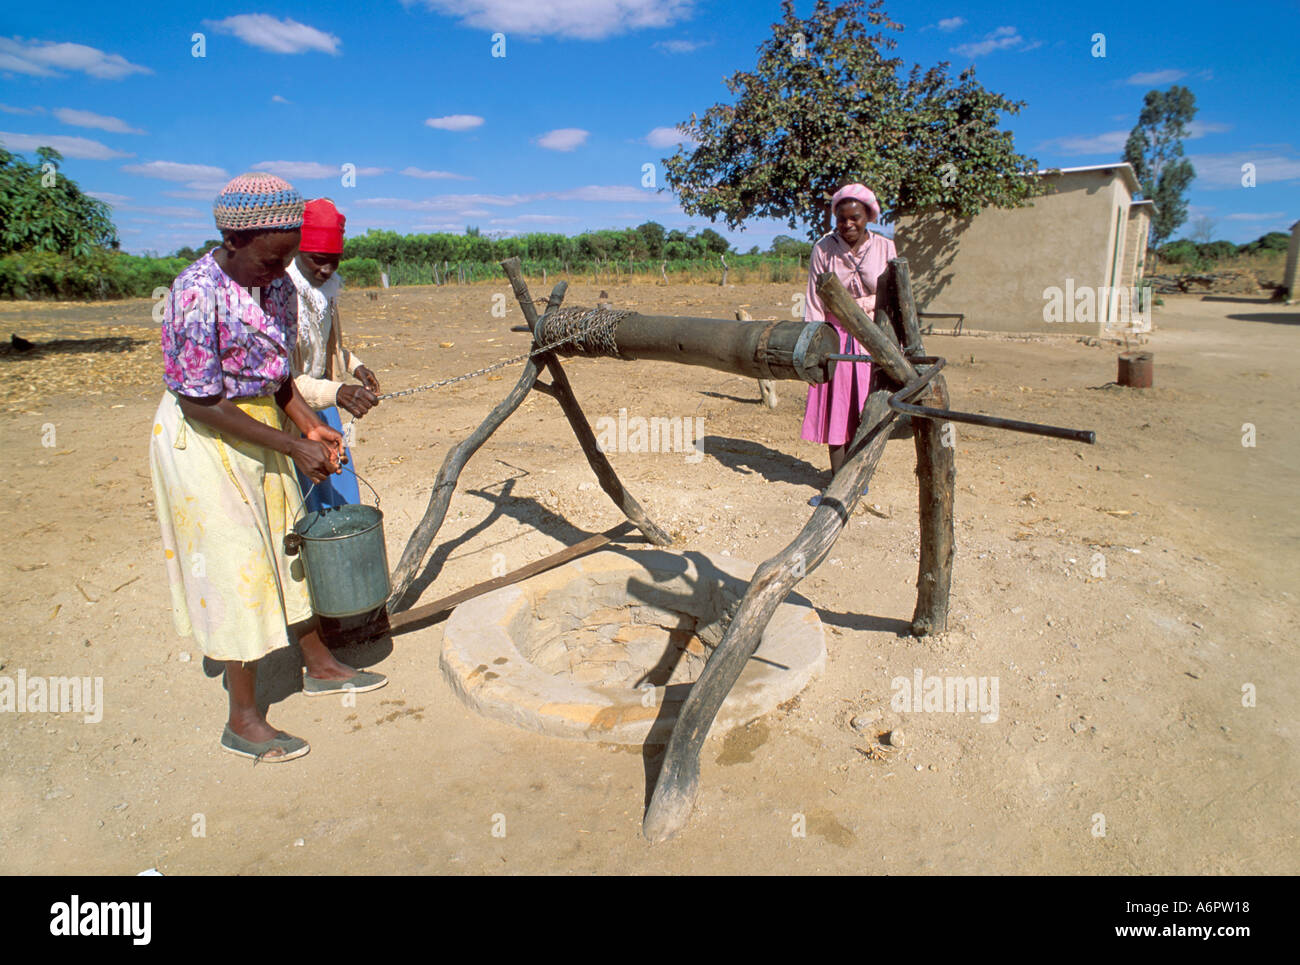 Les femmes de village tirant de l'eau à une vieille communauté winlass bien. Zimababwe Banque D'Images